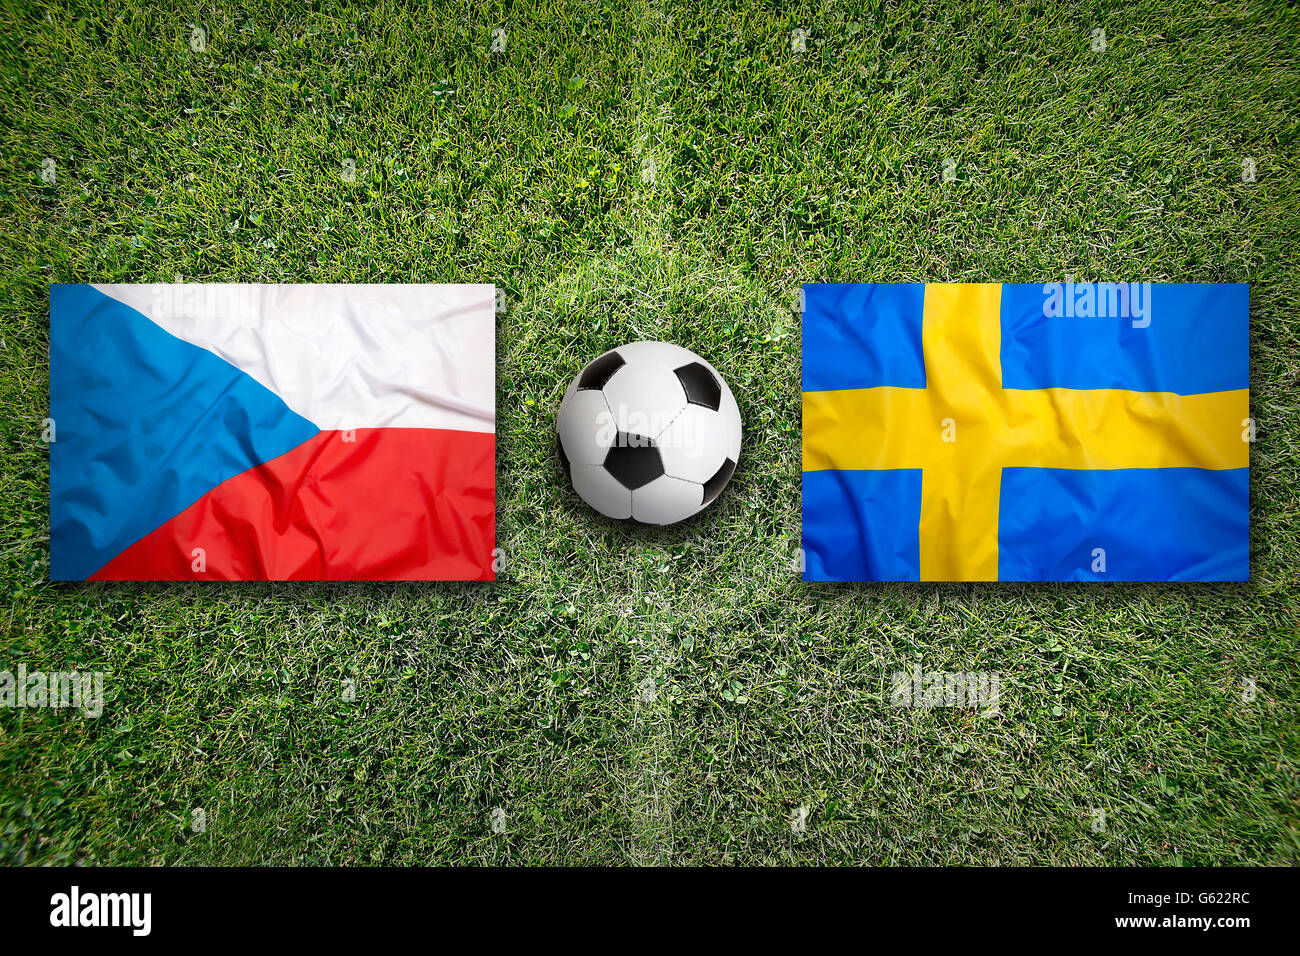 Czech Republic vs. Sweden flags on green soccer field Stock Photo